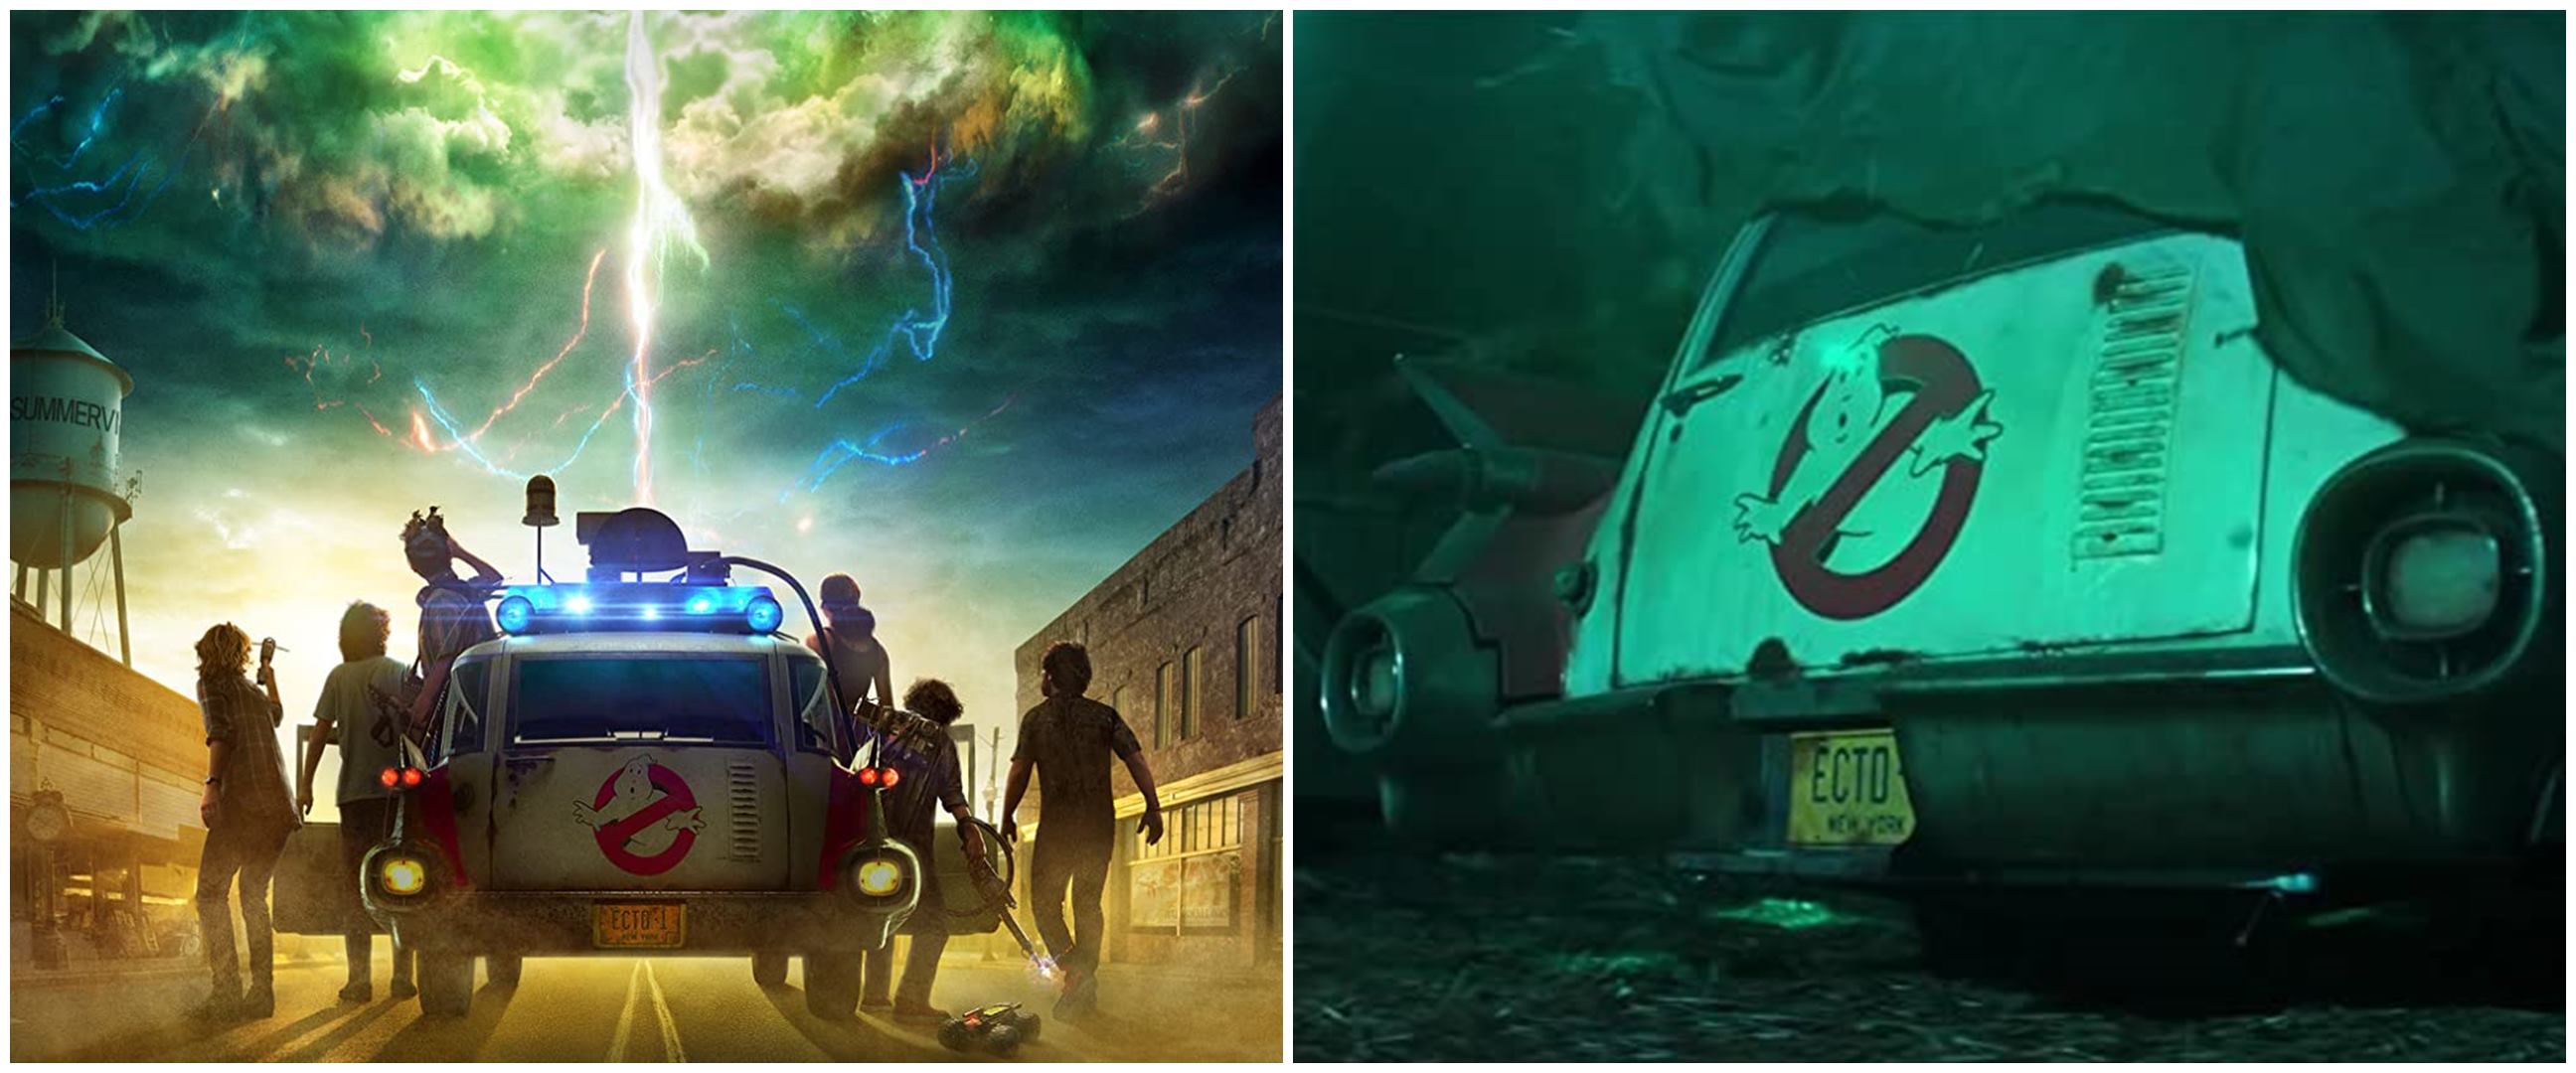 7 Fakta menarik Ghostbusters: Afterlife, ungkap rahasia besar keluarga